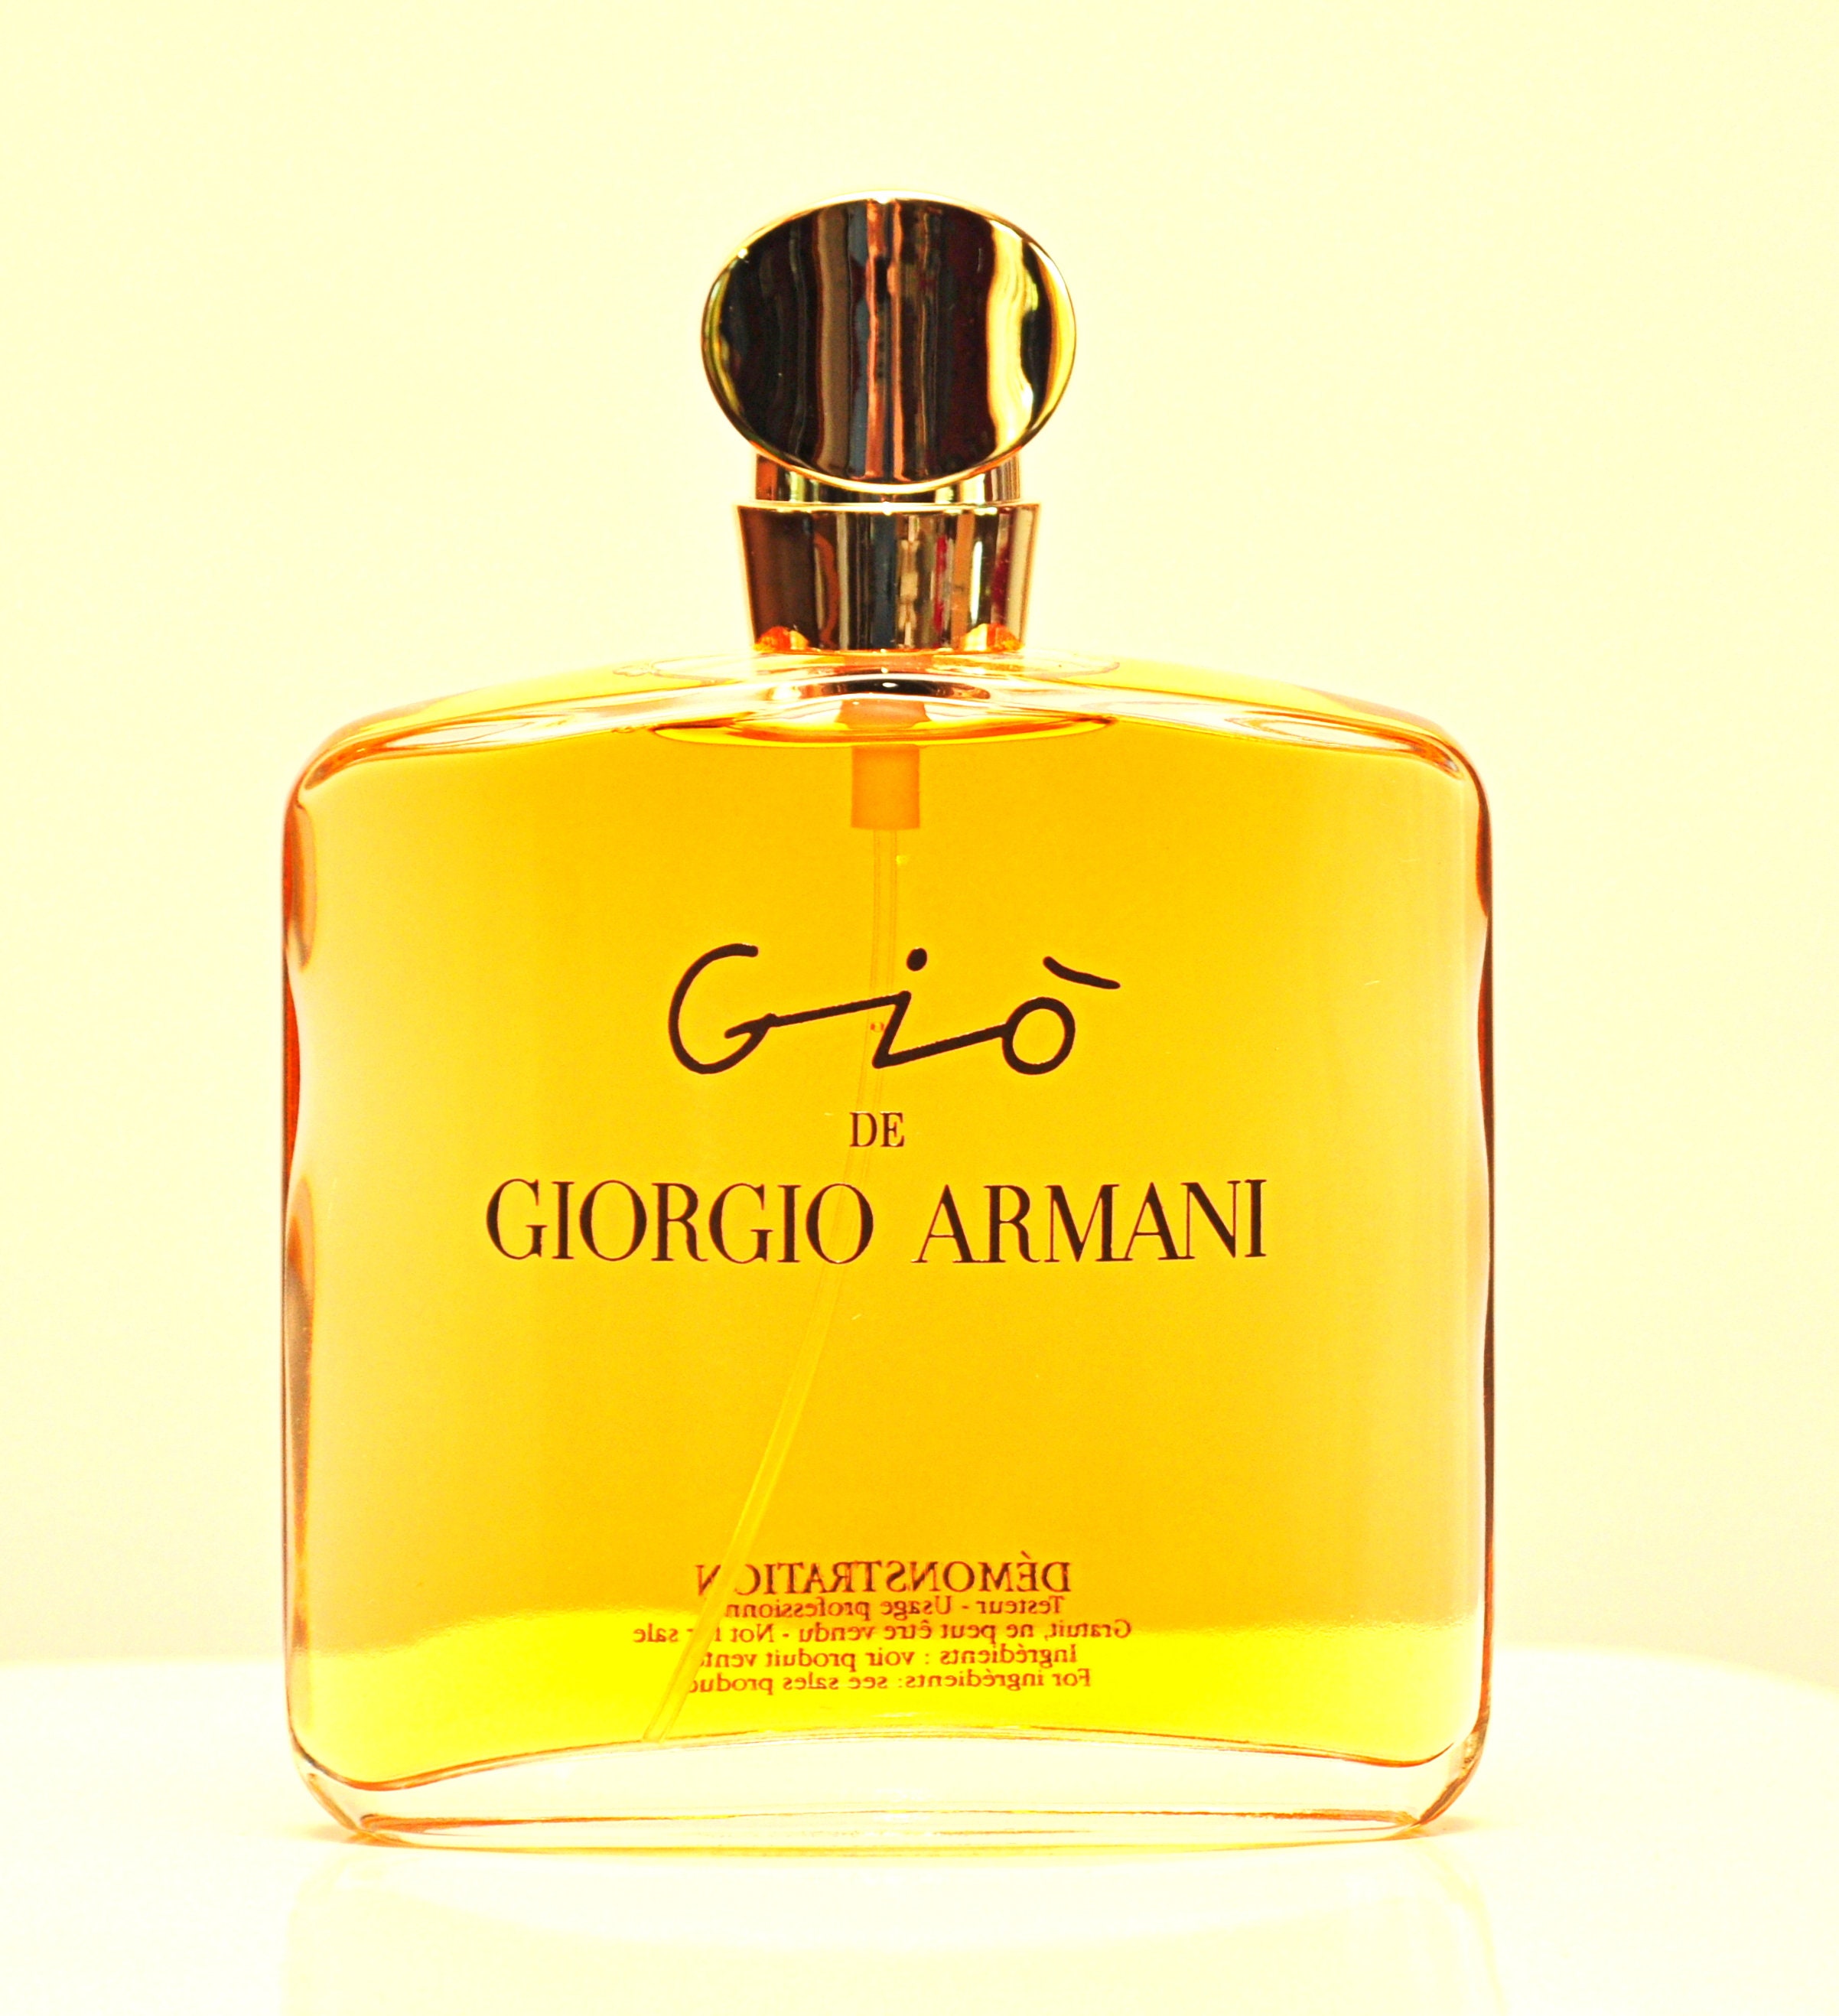 Giorgio Armani Giò De Giorgio Armani Eau De Parfum Edp 100ml - Etsy